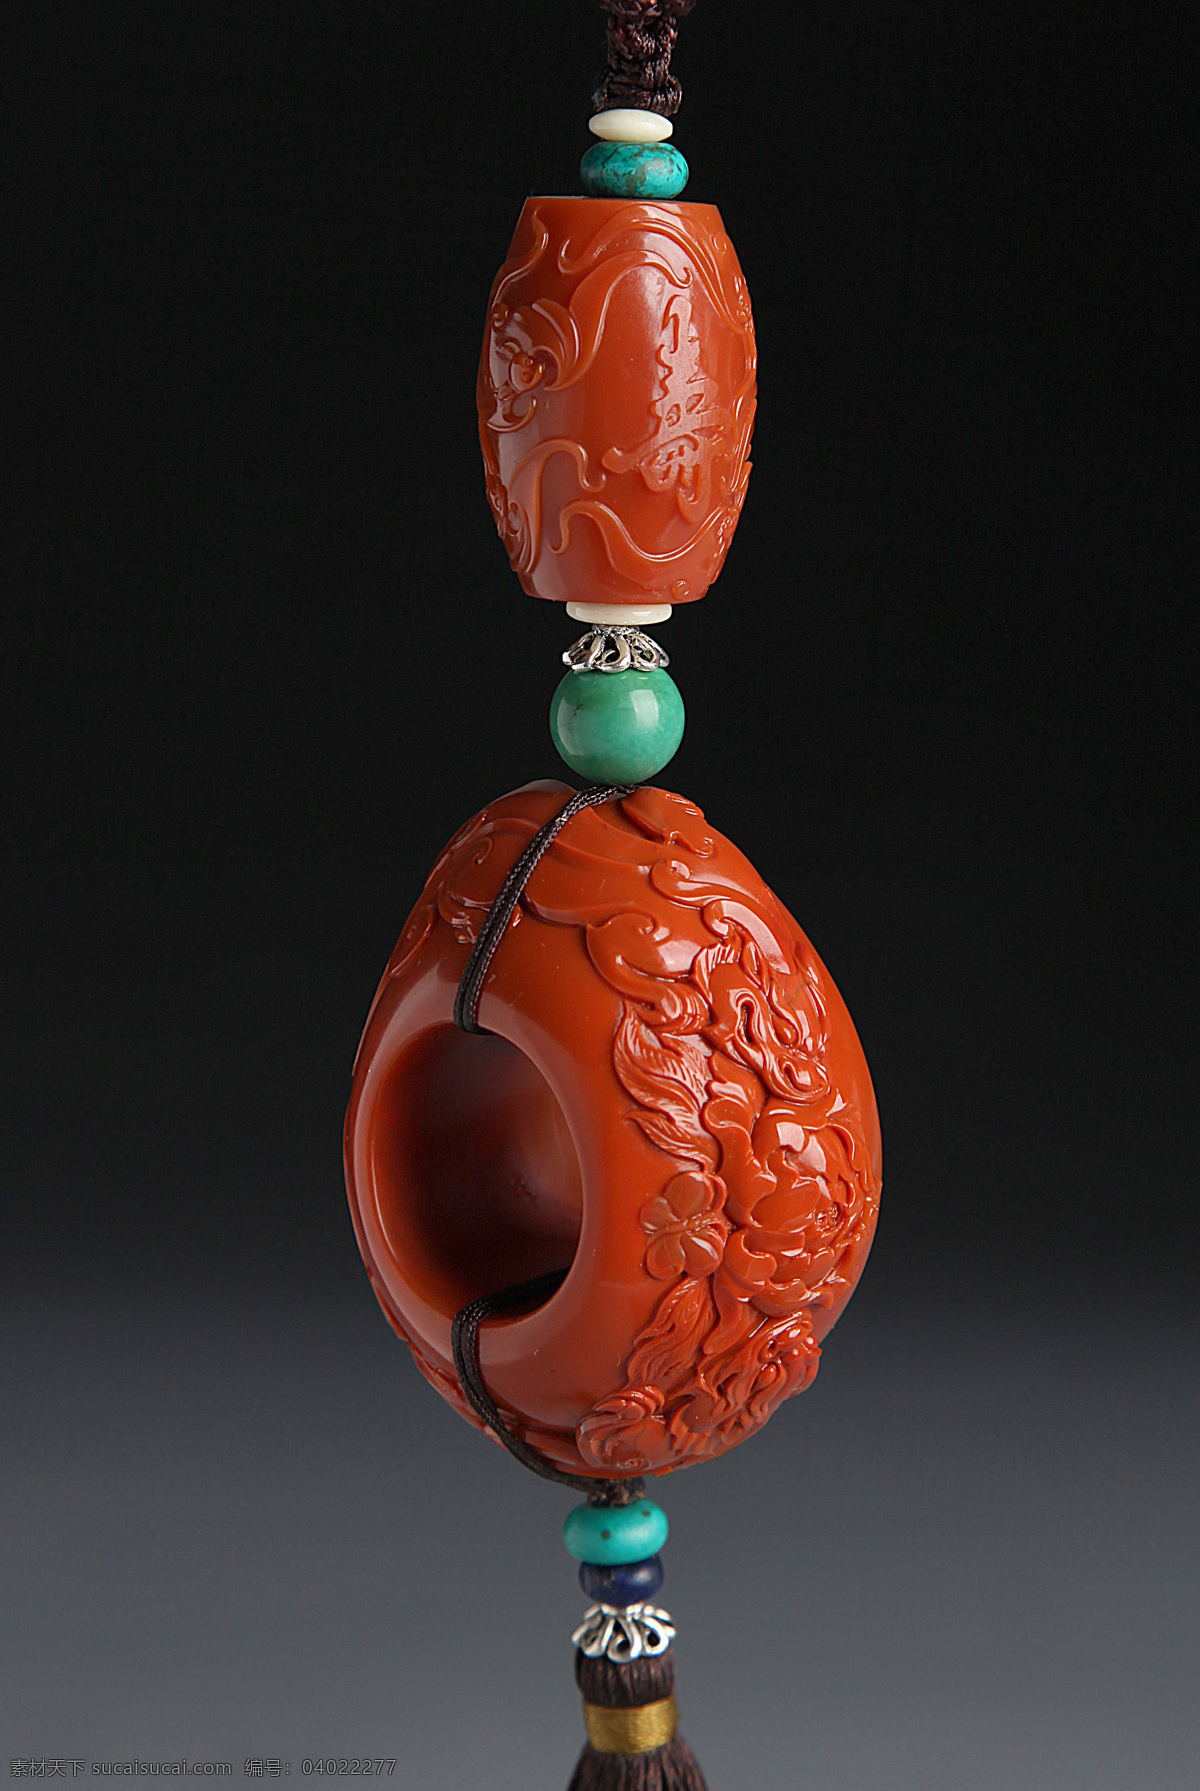 玉石 玉器 雕像 精雕细琢 工艺品 艺术品 收藏品 古玩玉器 财运 传统文化 文化艺术